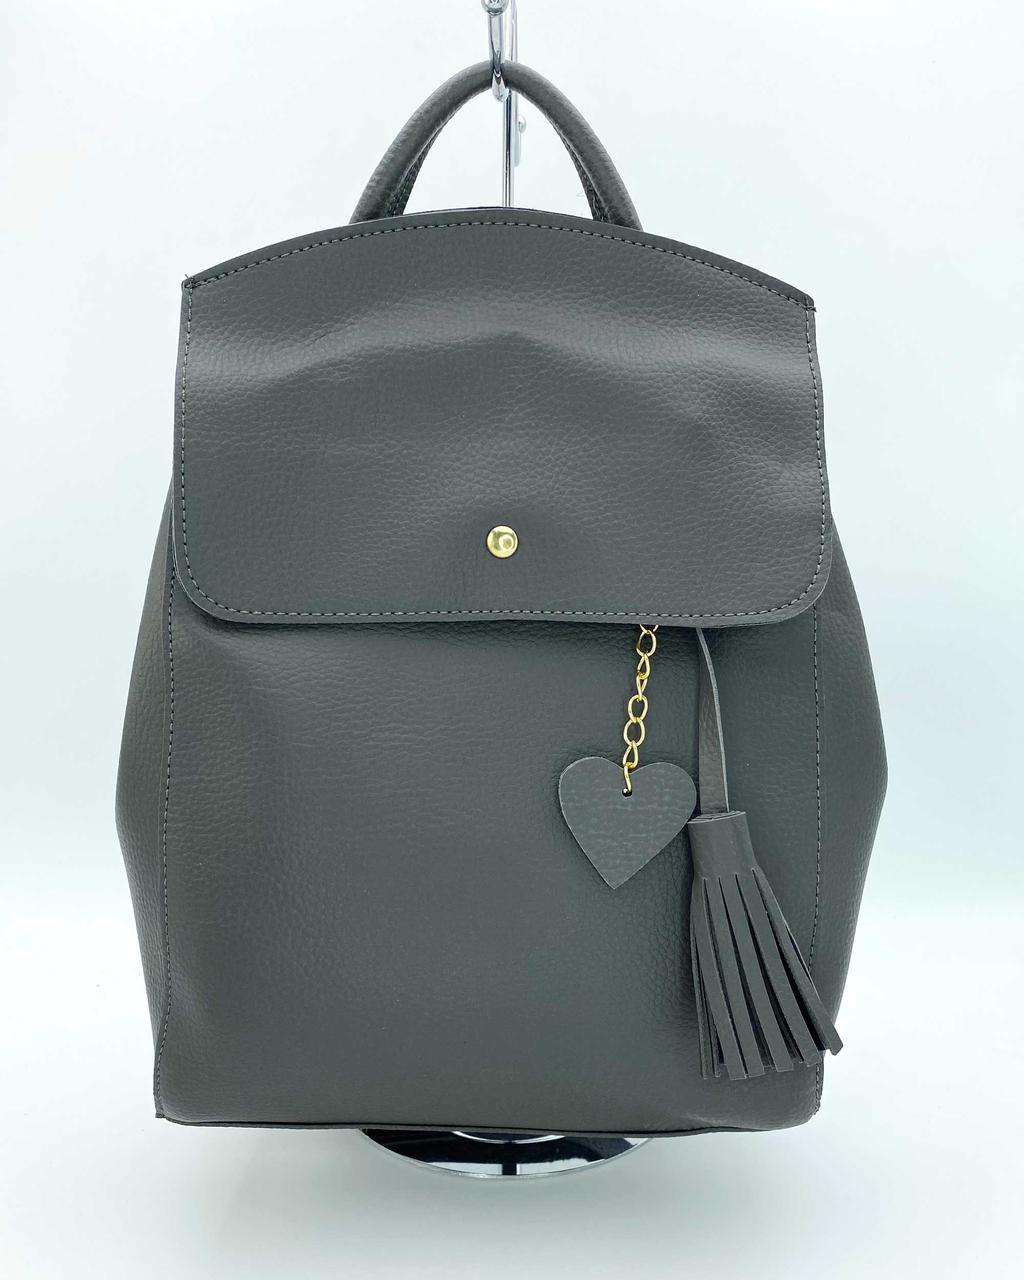 Жіночий шкіряний рюкзак-сумка сірого кольору «Серце» з брелоком у вигляді серця Welassie